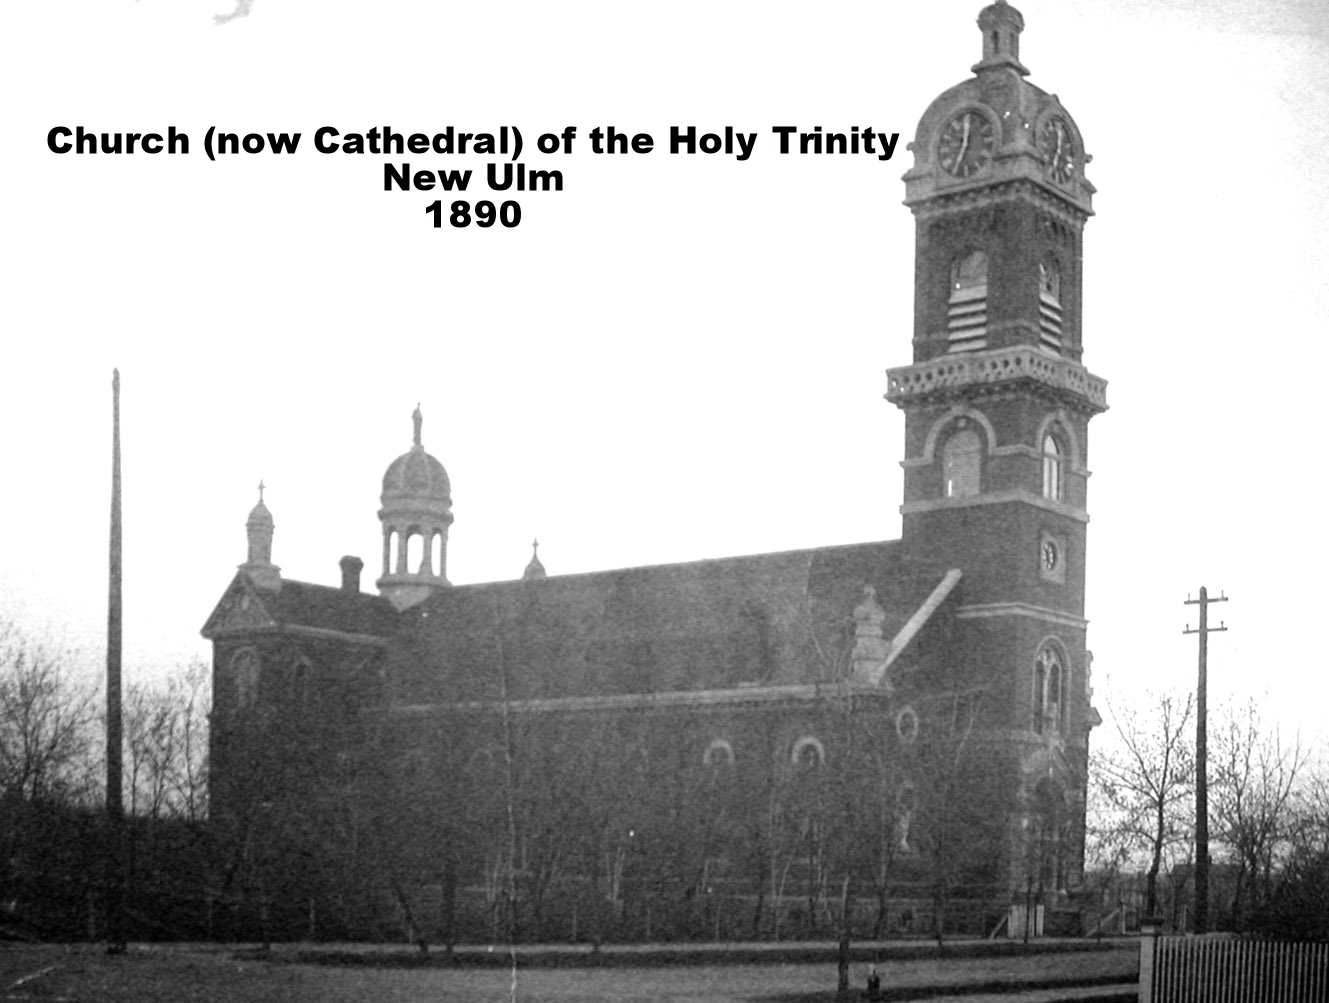 AAL2-Church of the Holy Trinity 1890-New Ulm_087a.jpg